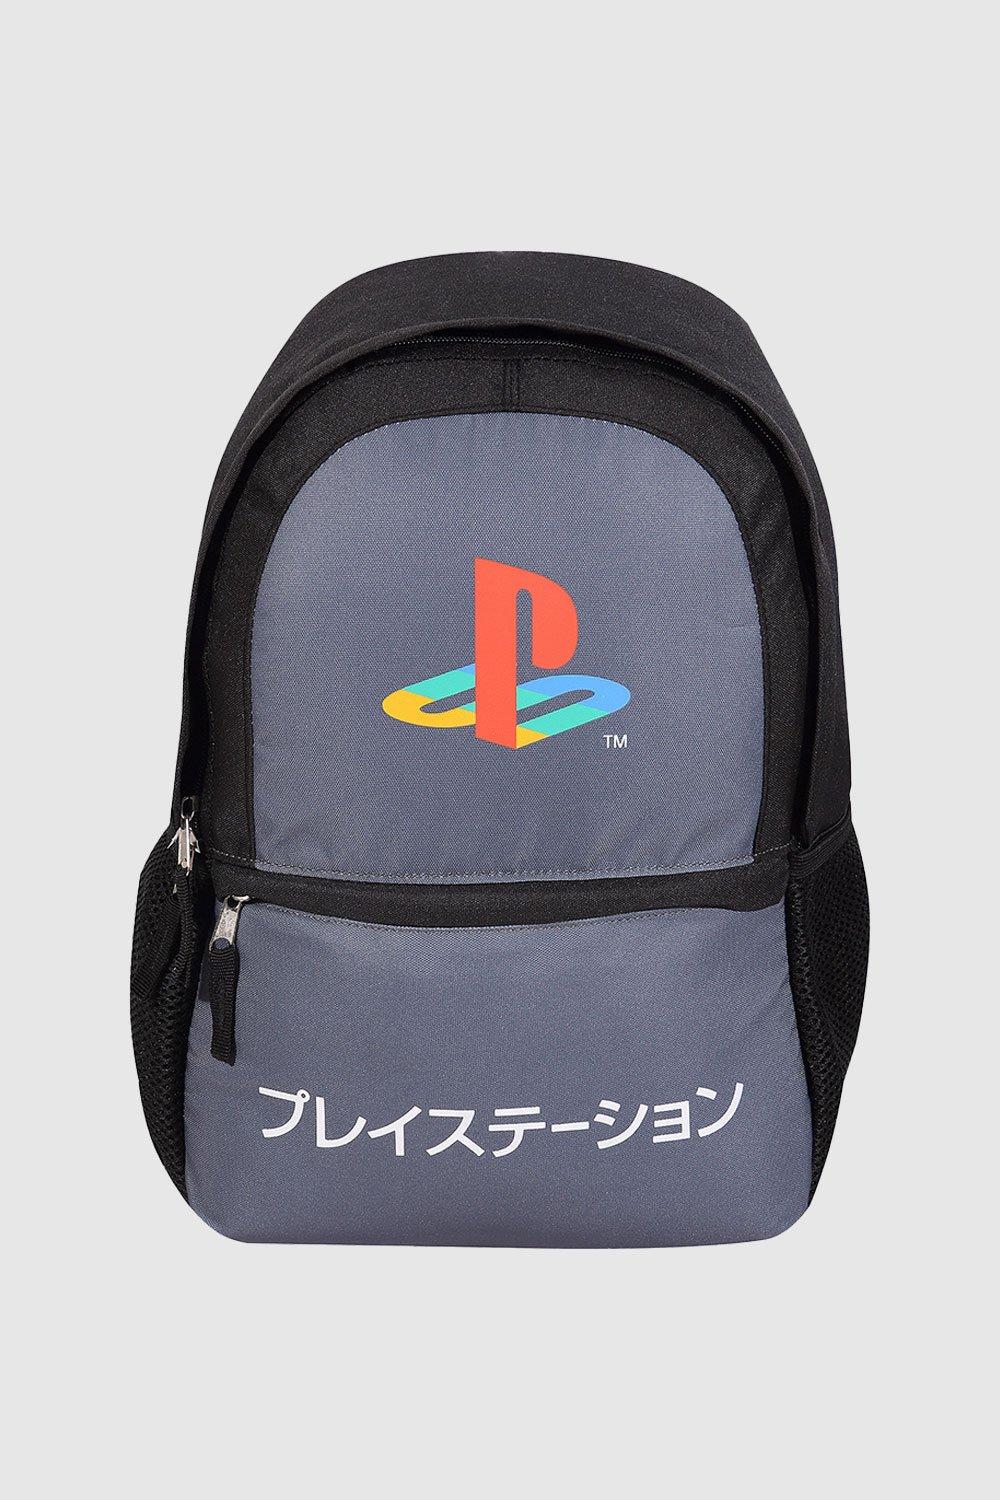 Рюкзак с контрастным логотипом Playstation, серый игра bloodborne хиты playstation для playstation 4